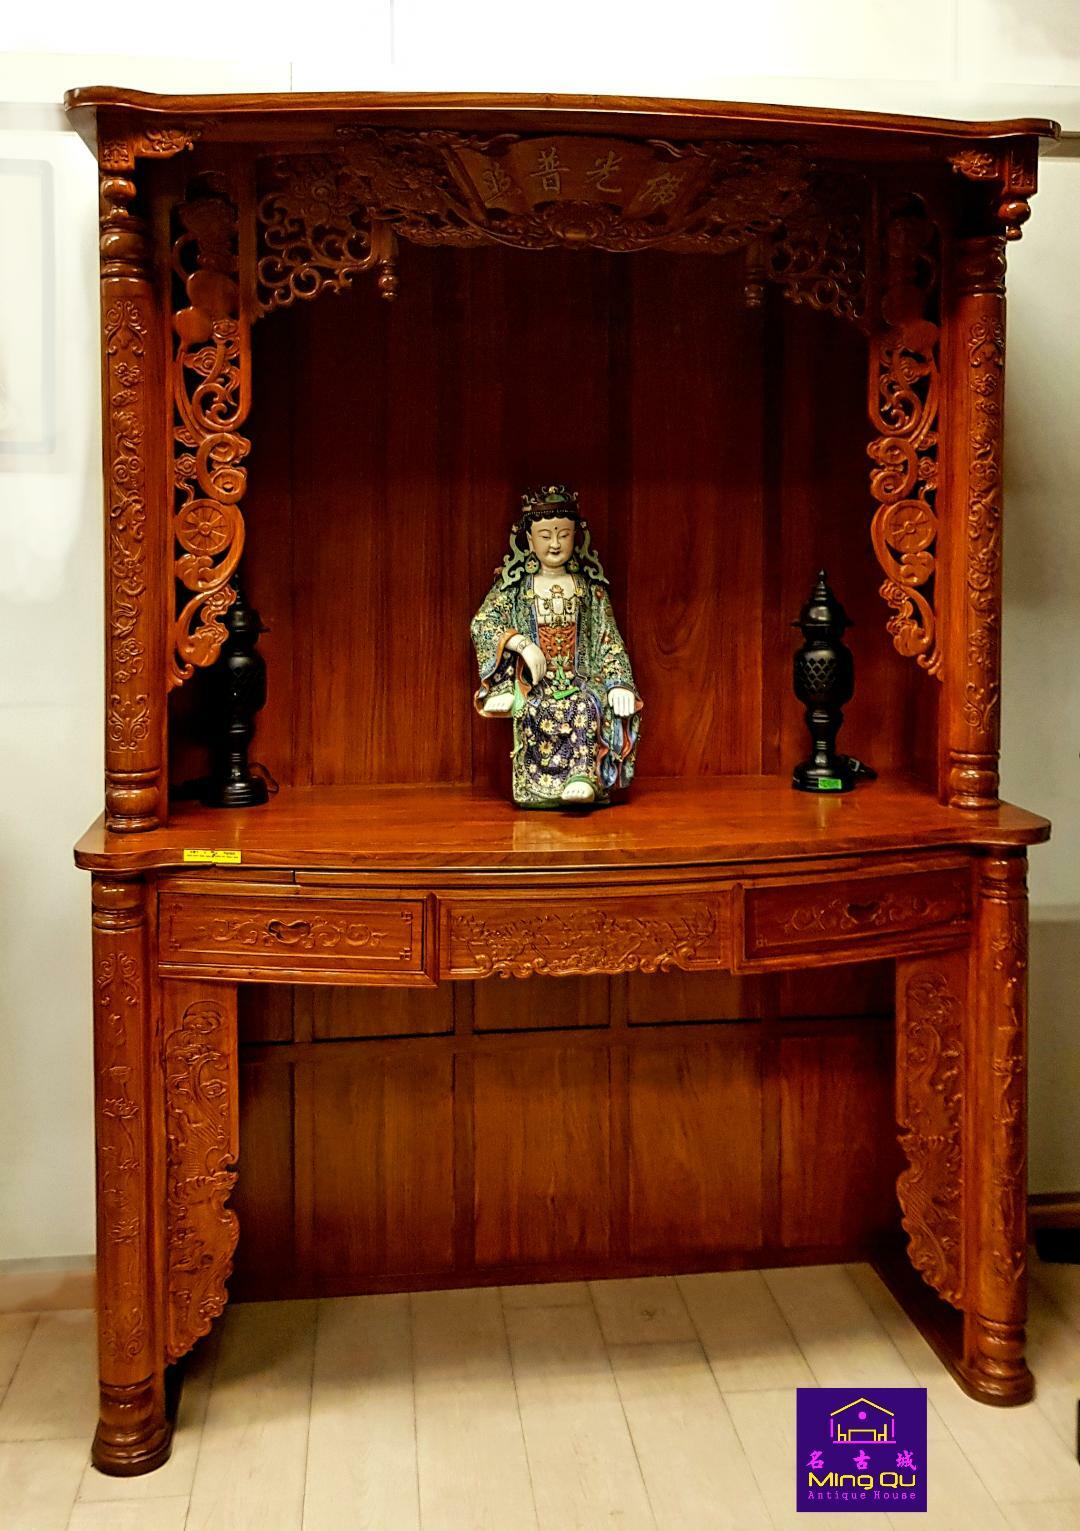 AHHL wood Lotus Roof Buddha Table 176cm 非黄木莲花顶佛枱176公分 